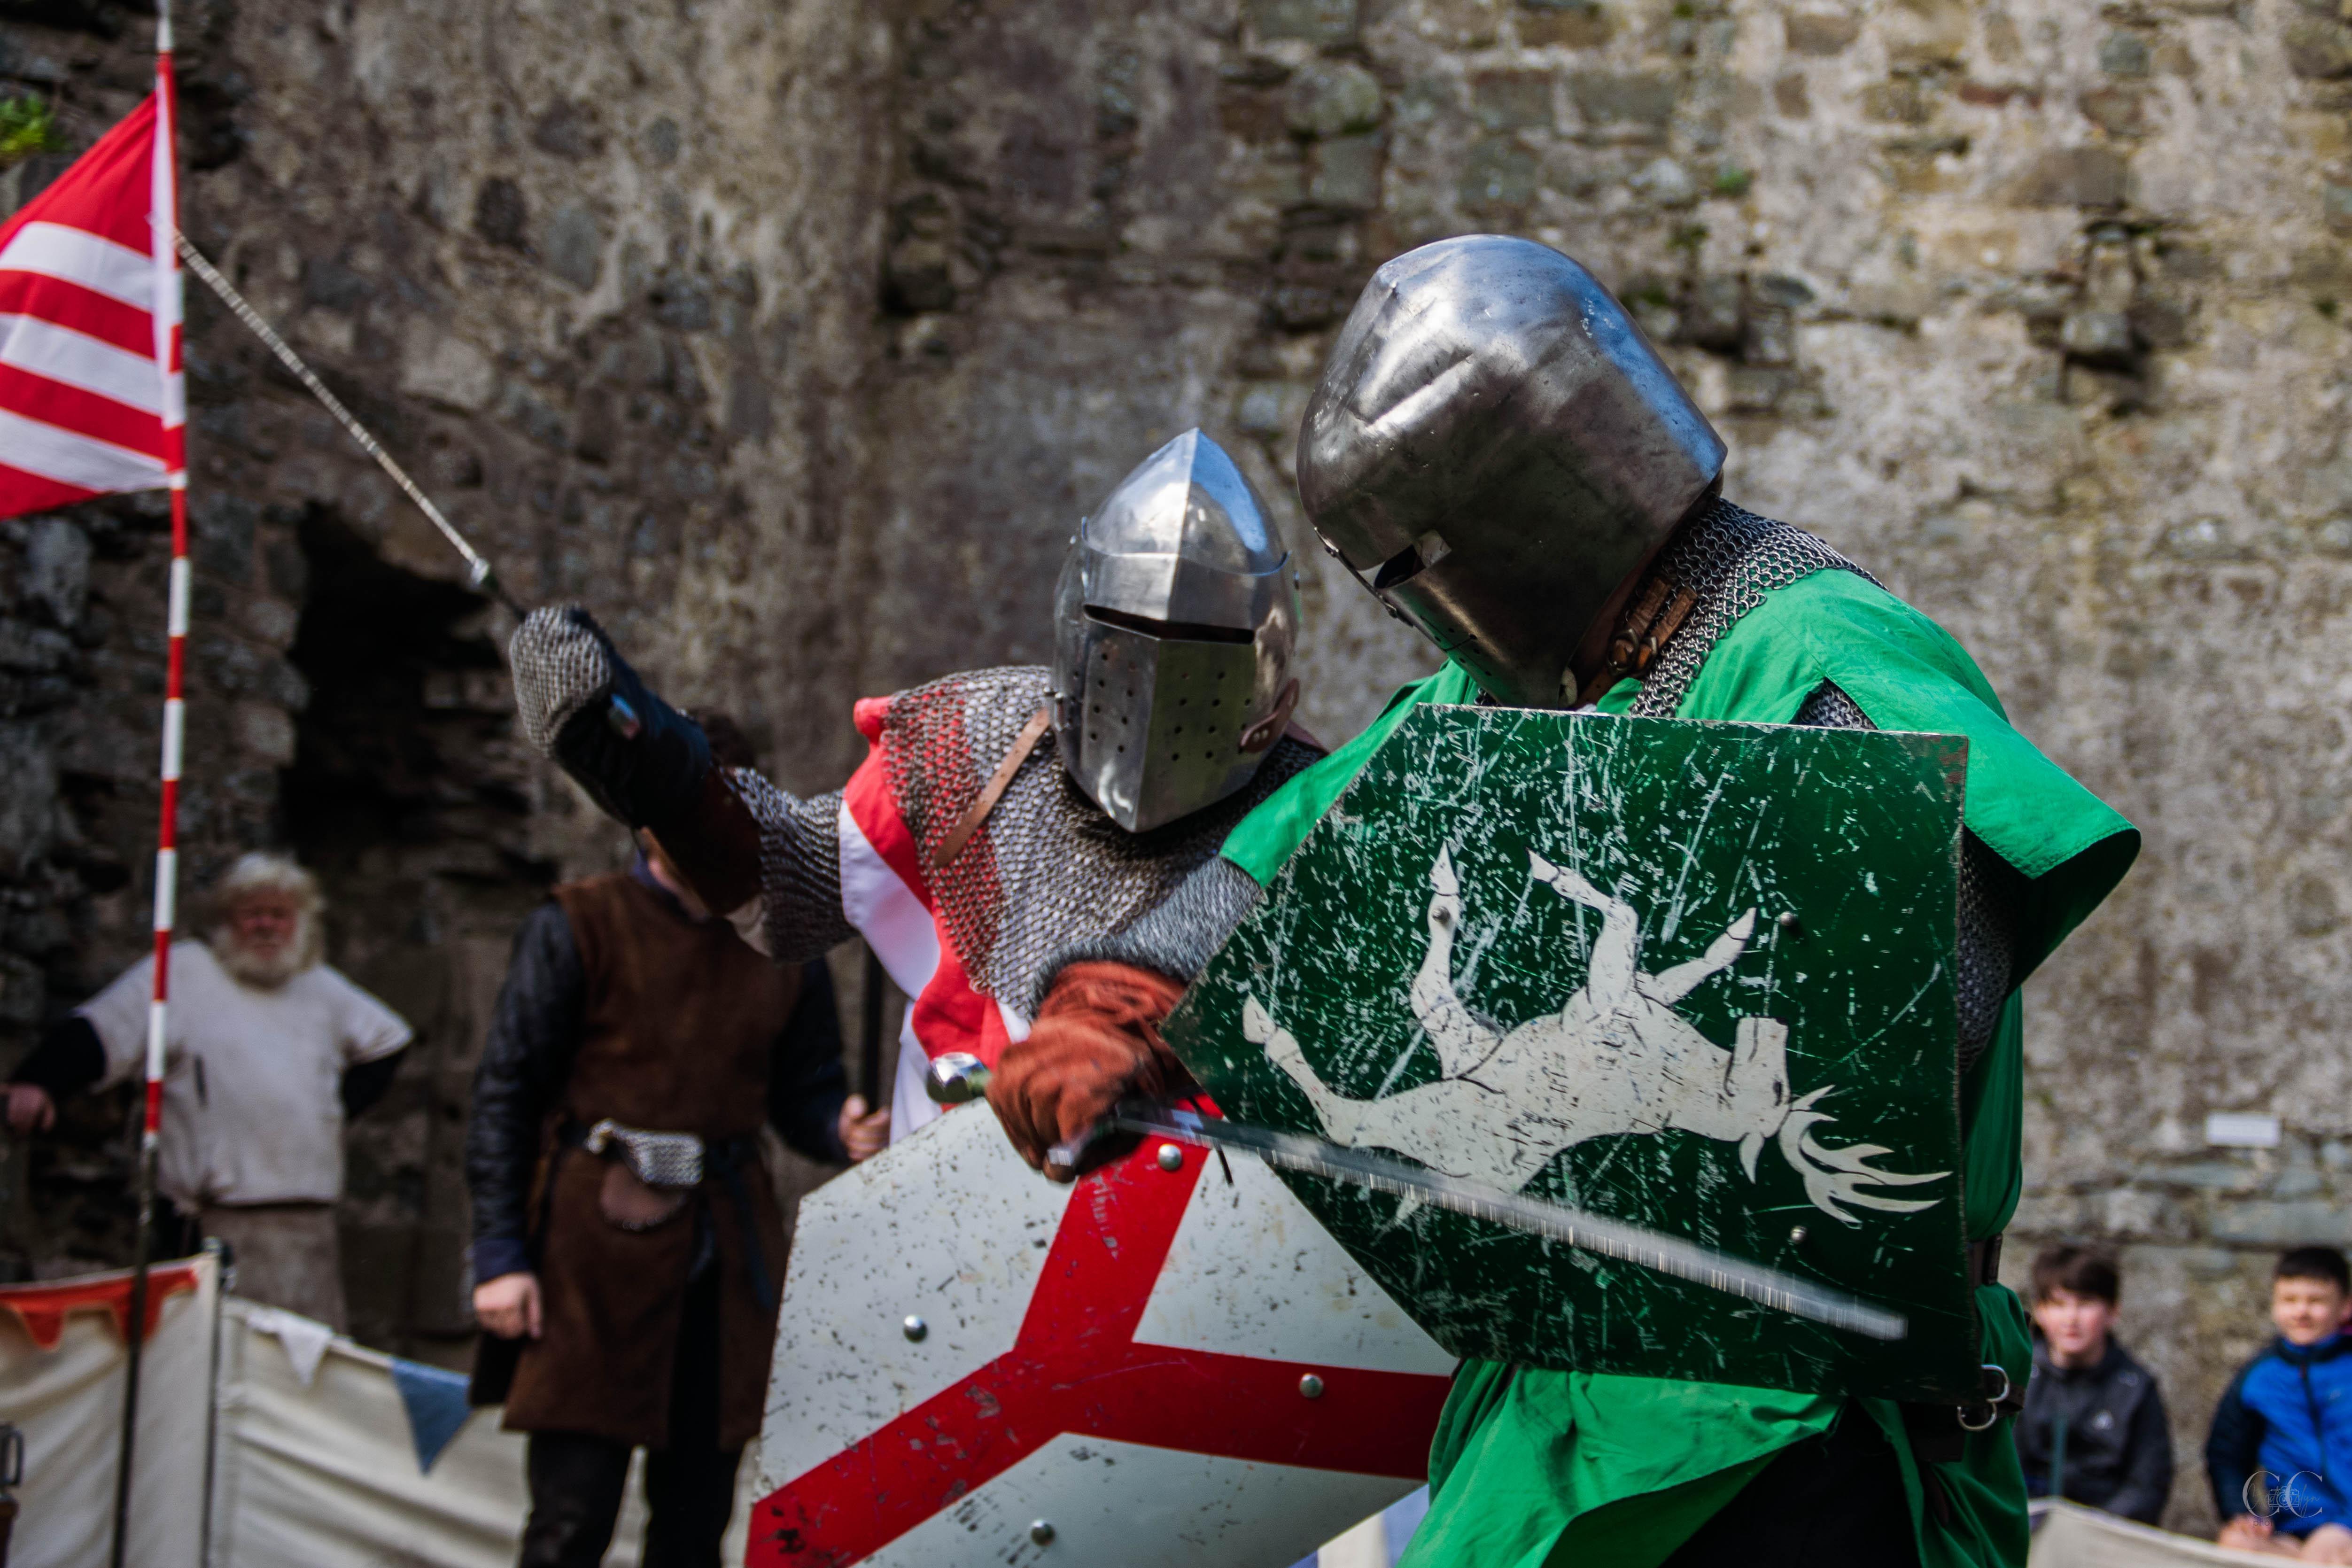 marchogion Ardudwy yn ymladd / Ardudwy knights fighting